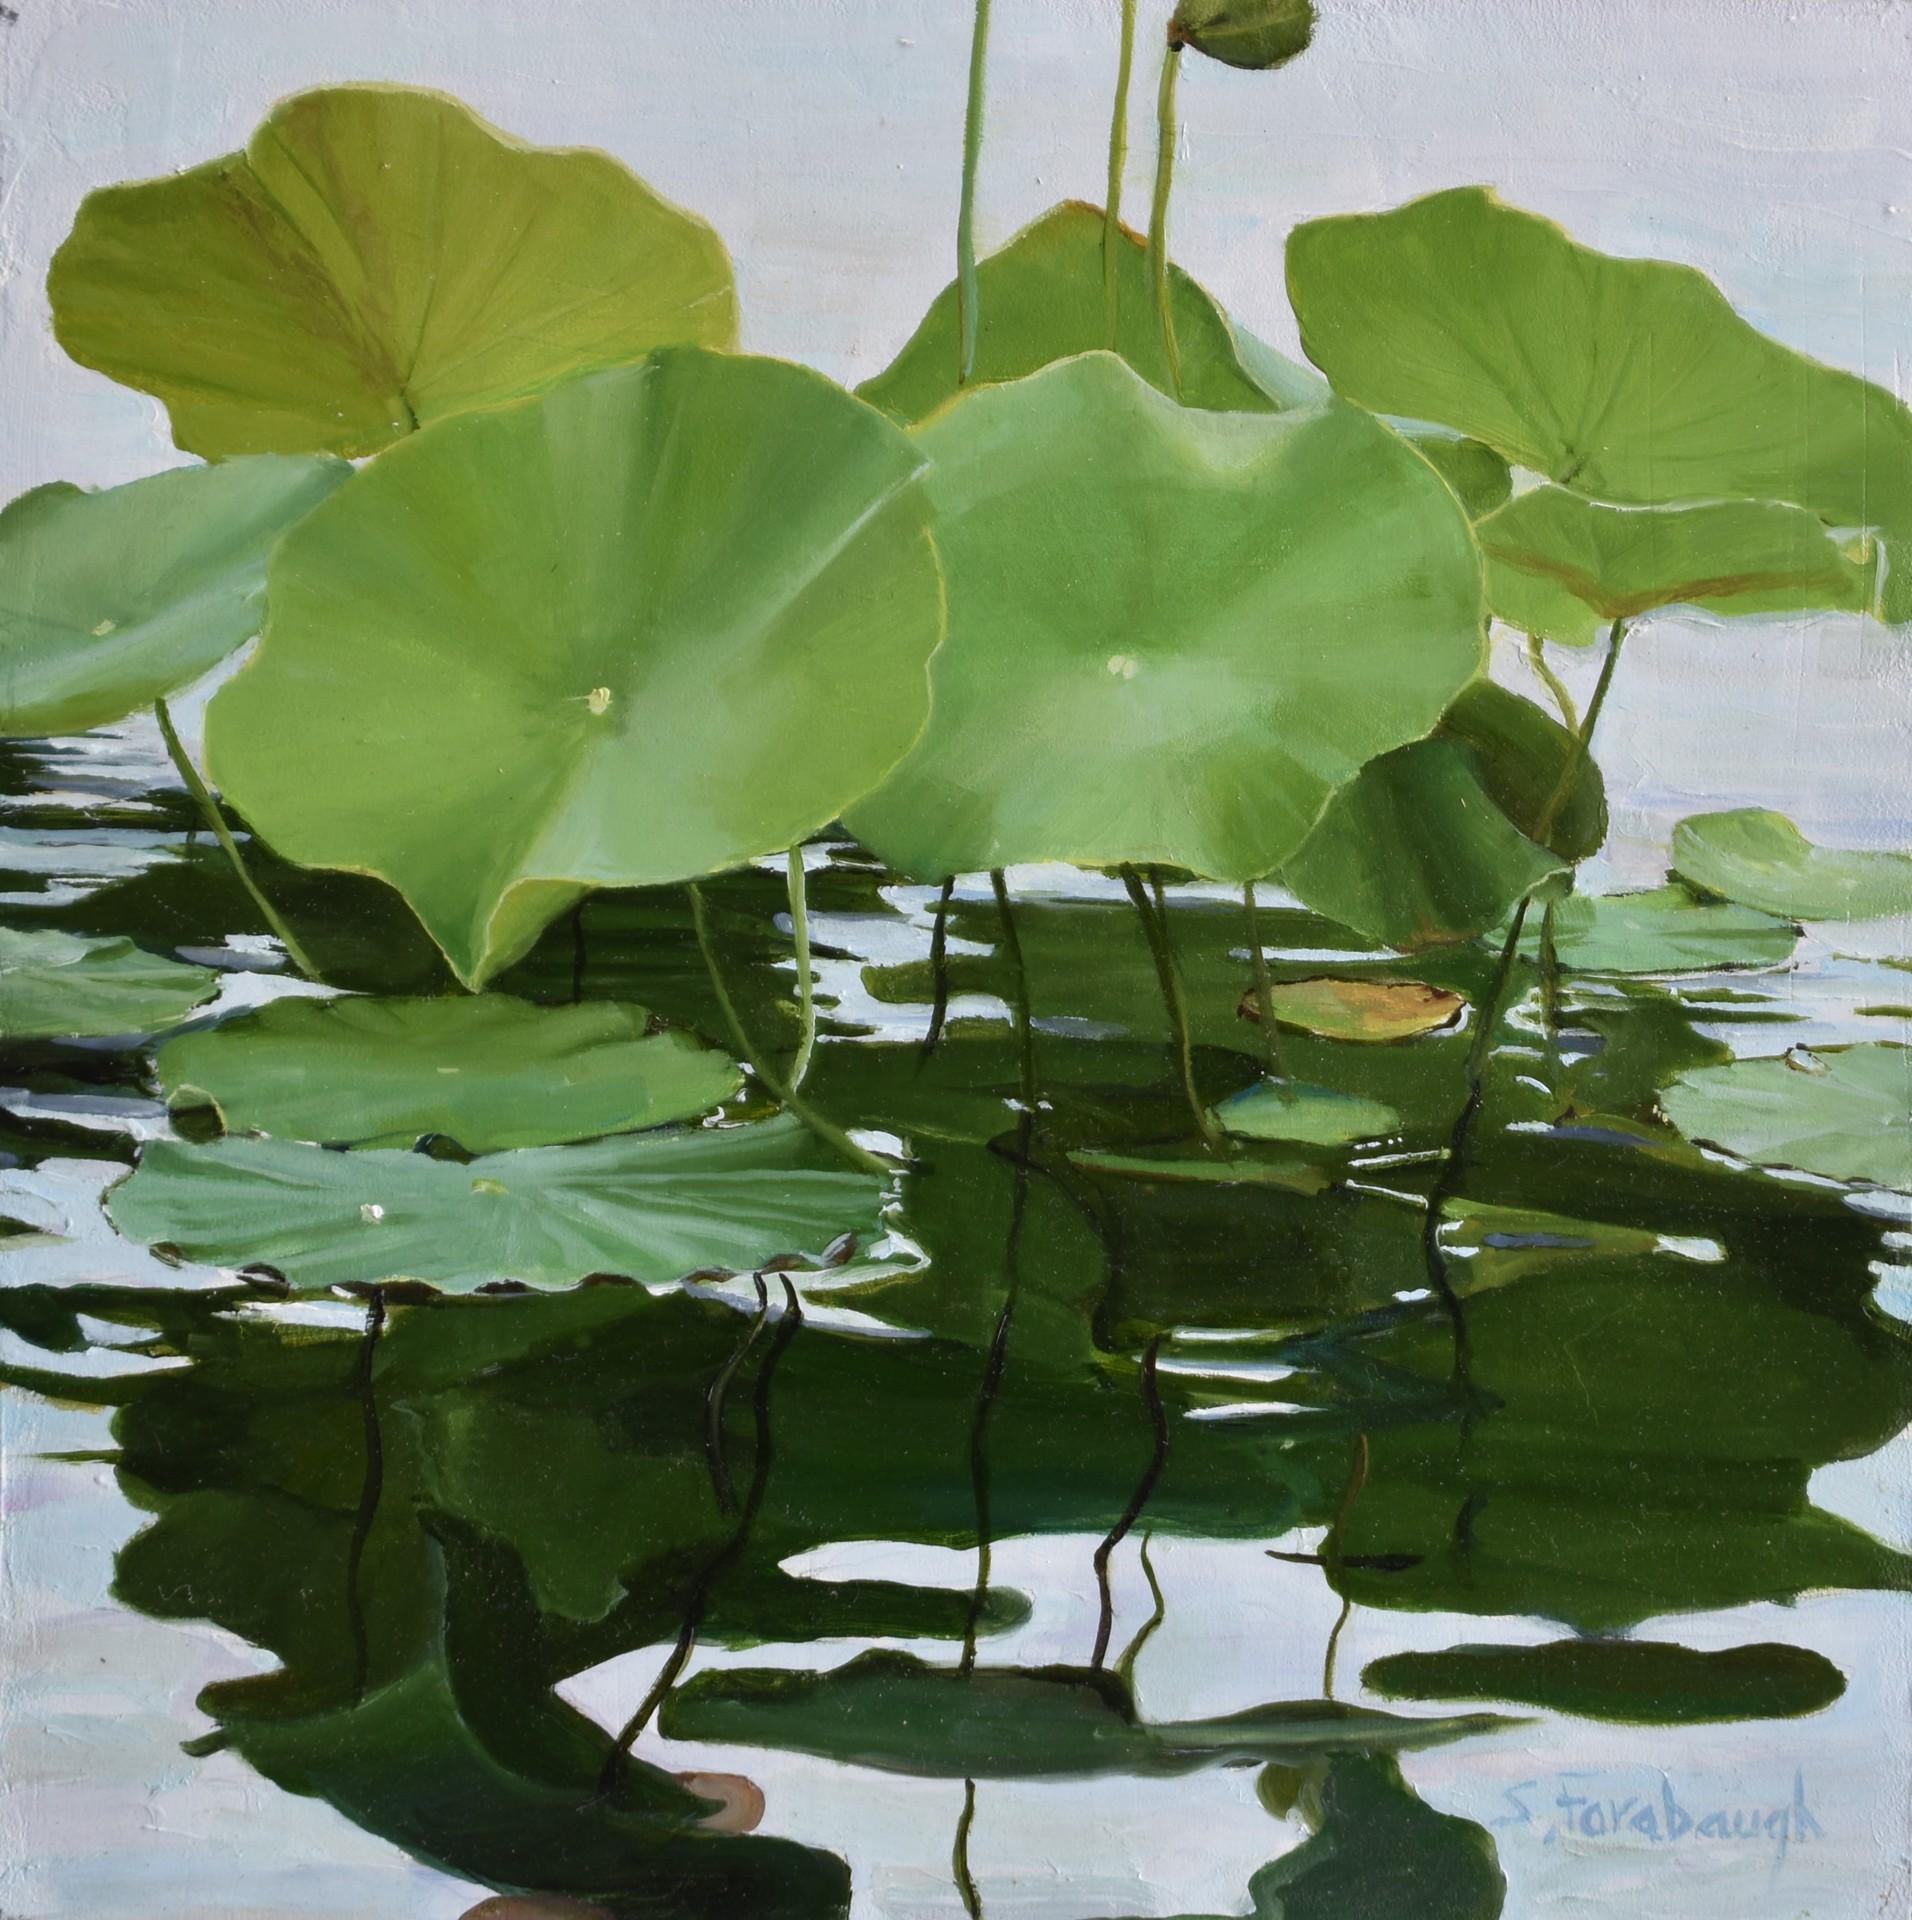 Lotus Leaves - Art by Sheri Farabaugh